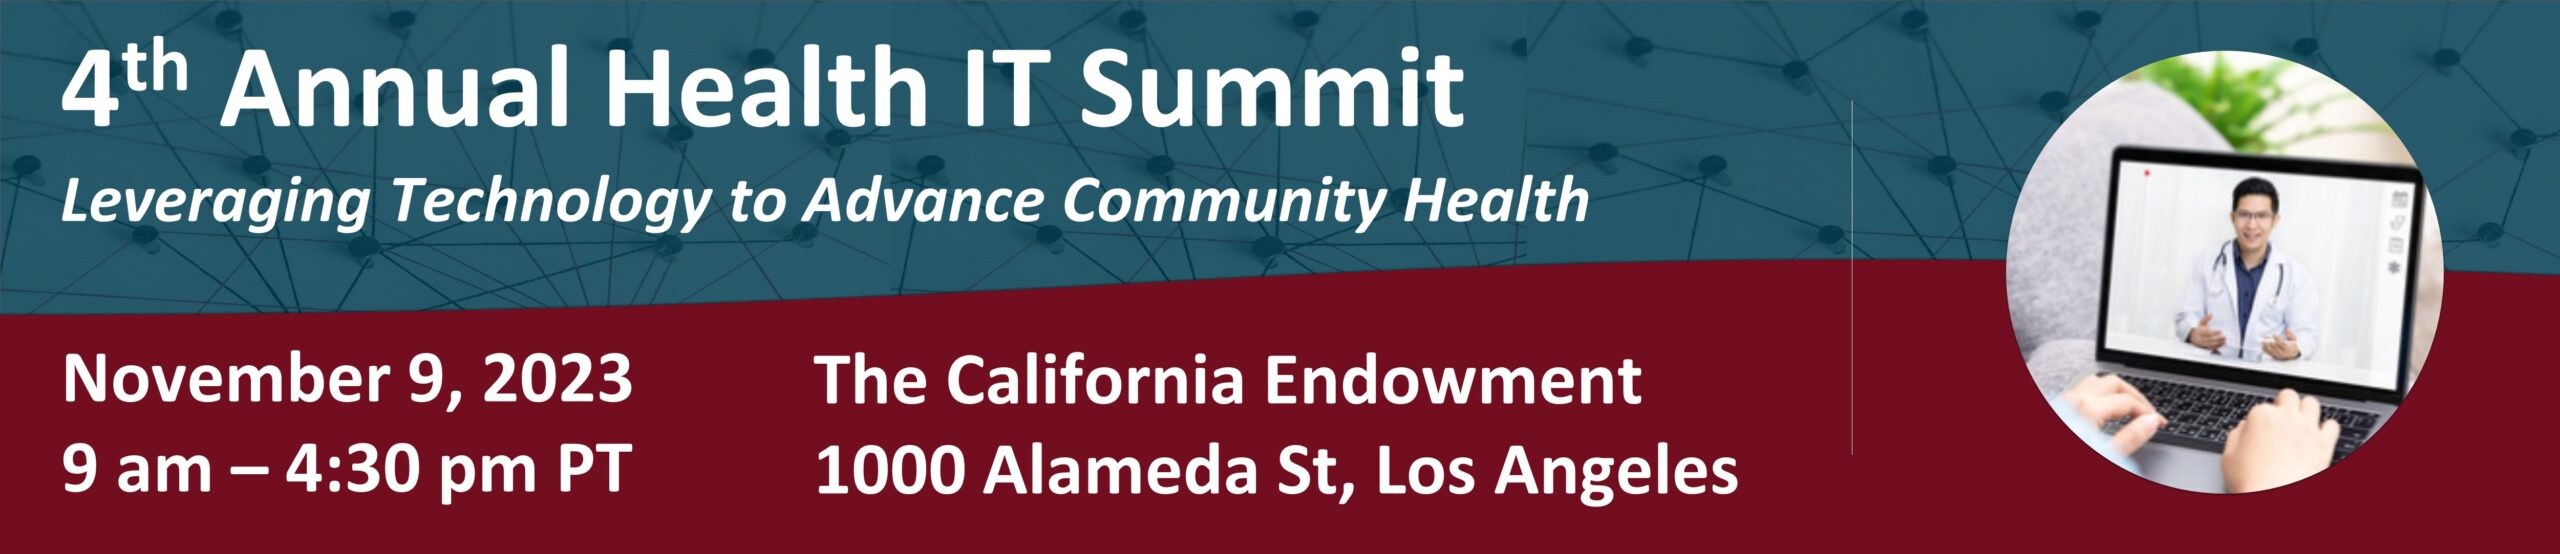 4th Annual Health IT Summit